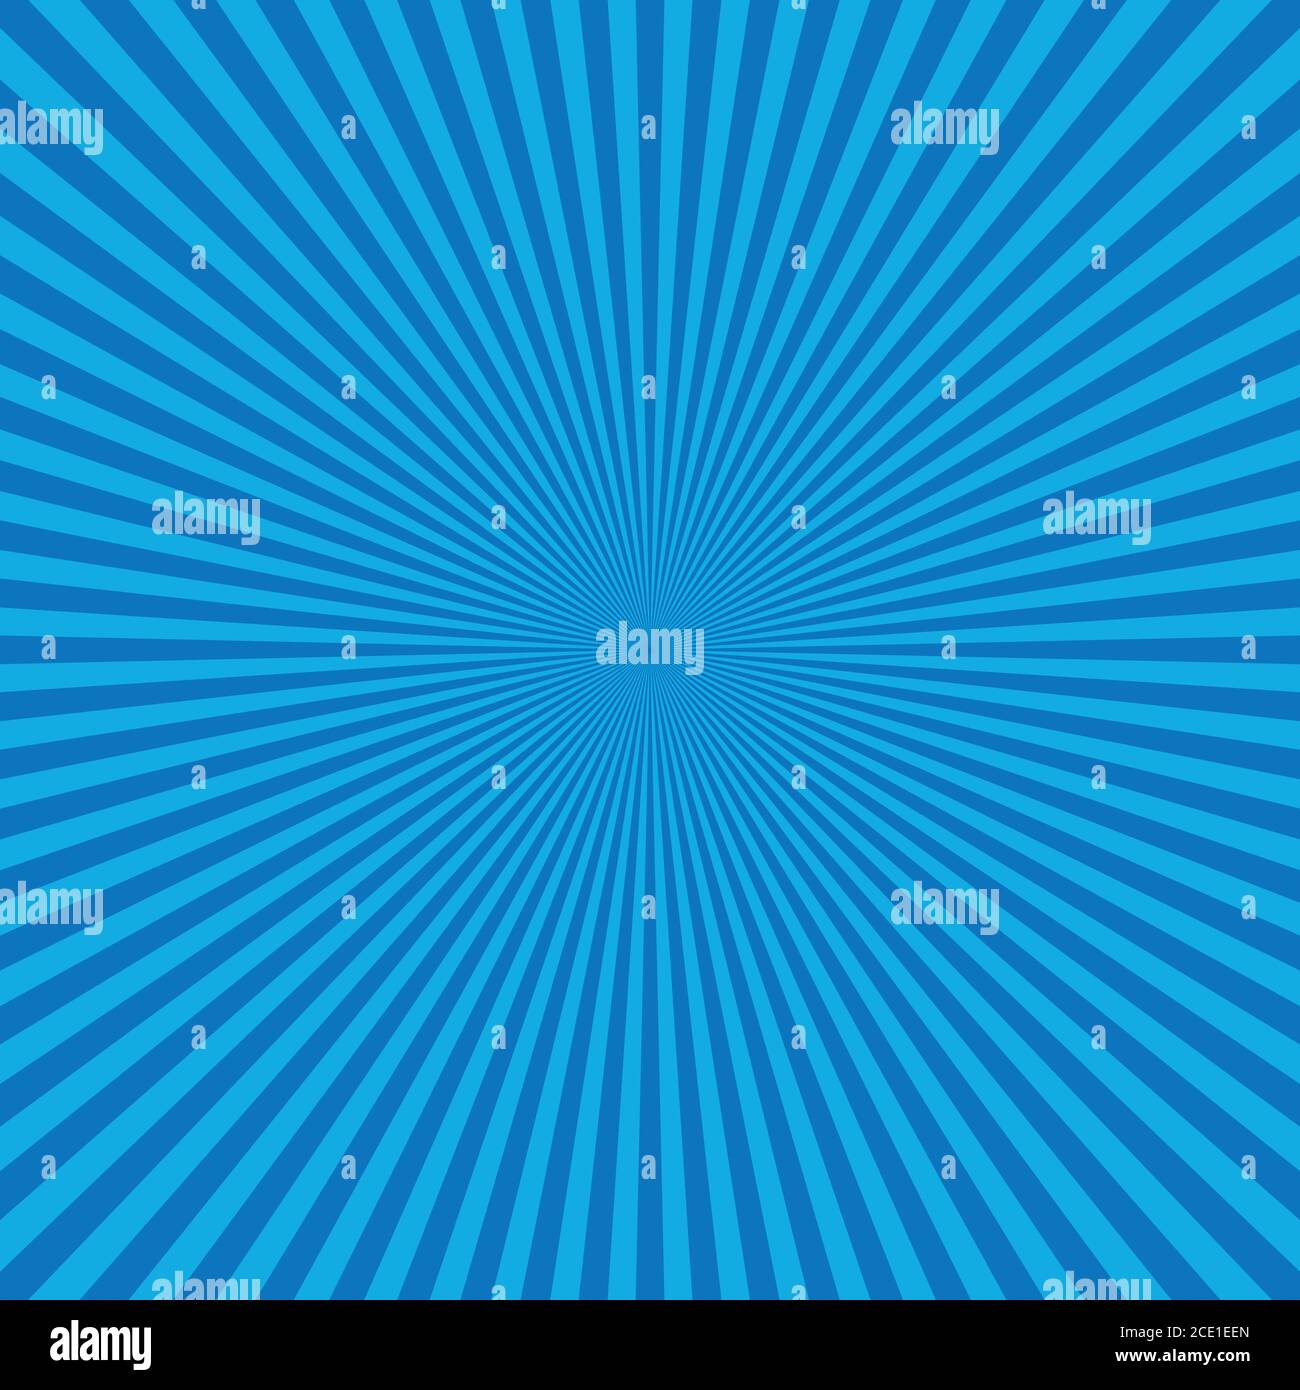 Astratto blu Sunburst backgound. Raggi vettoriali in disposizione radiale. Illustrazione Vettoriale